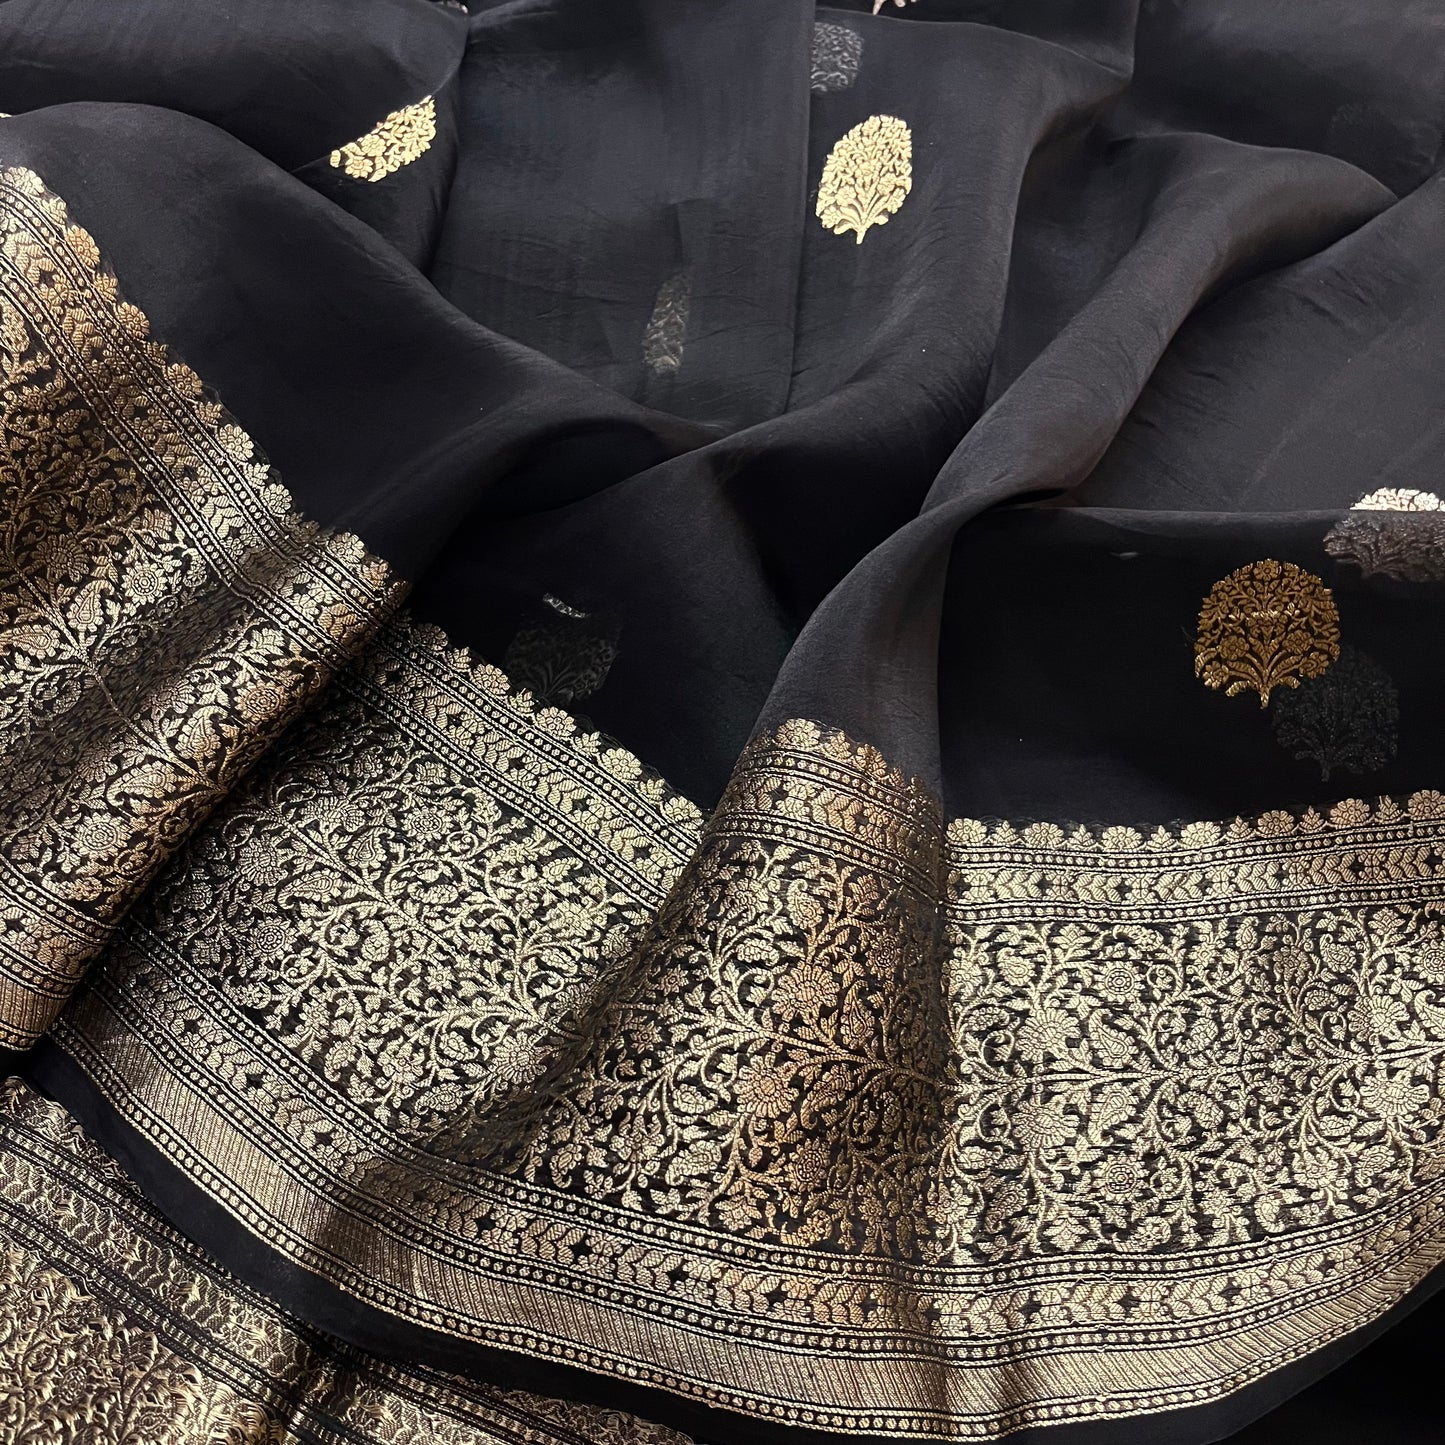 Black banarasi saree with zari motifs all over